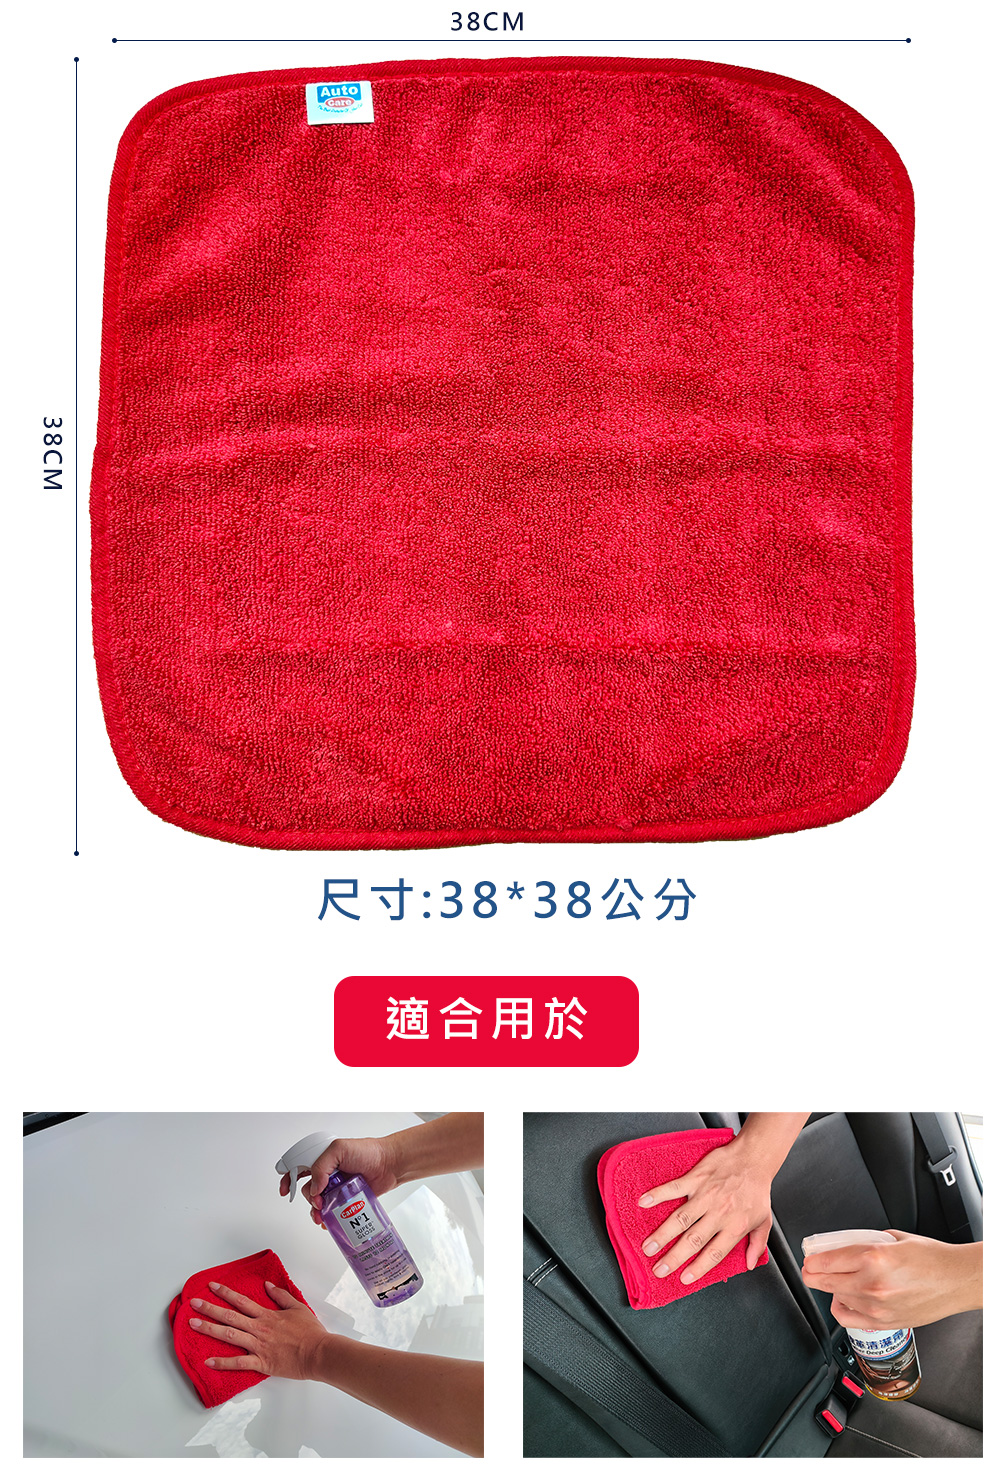 Microfiber Detailing Towel 超細纖維毛